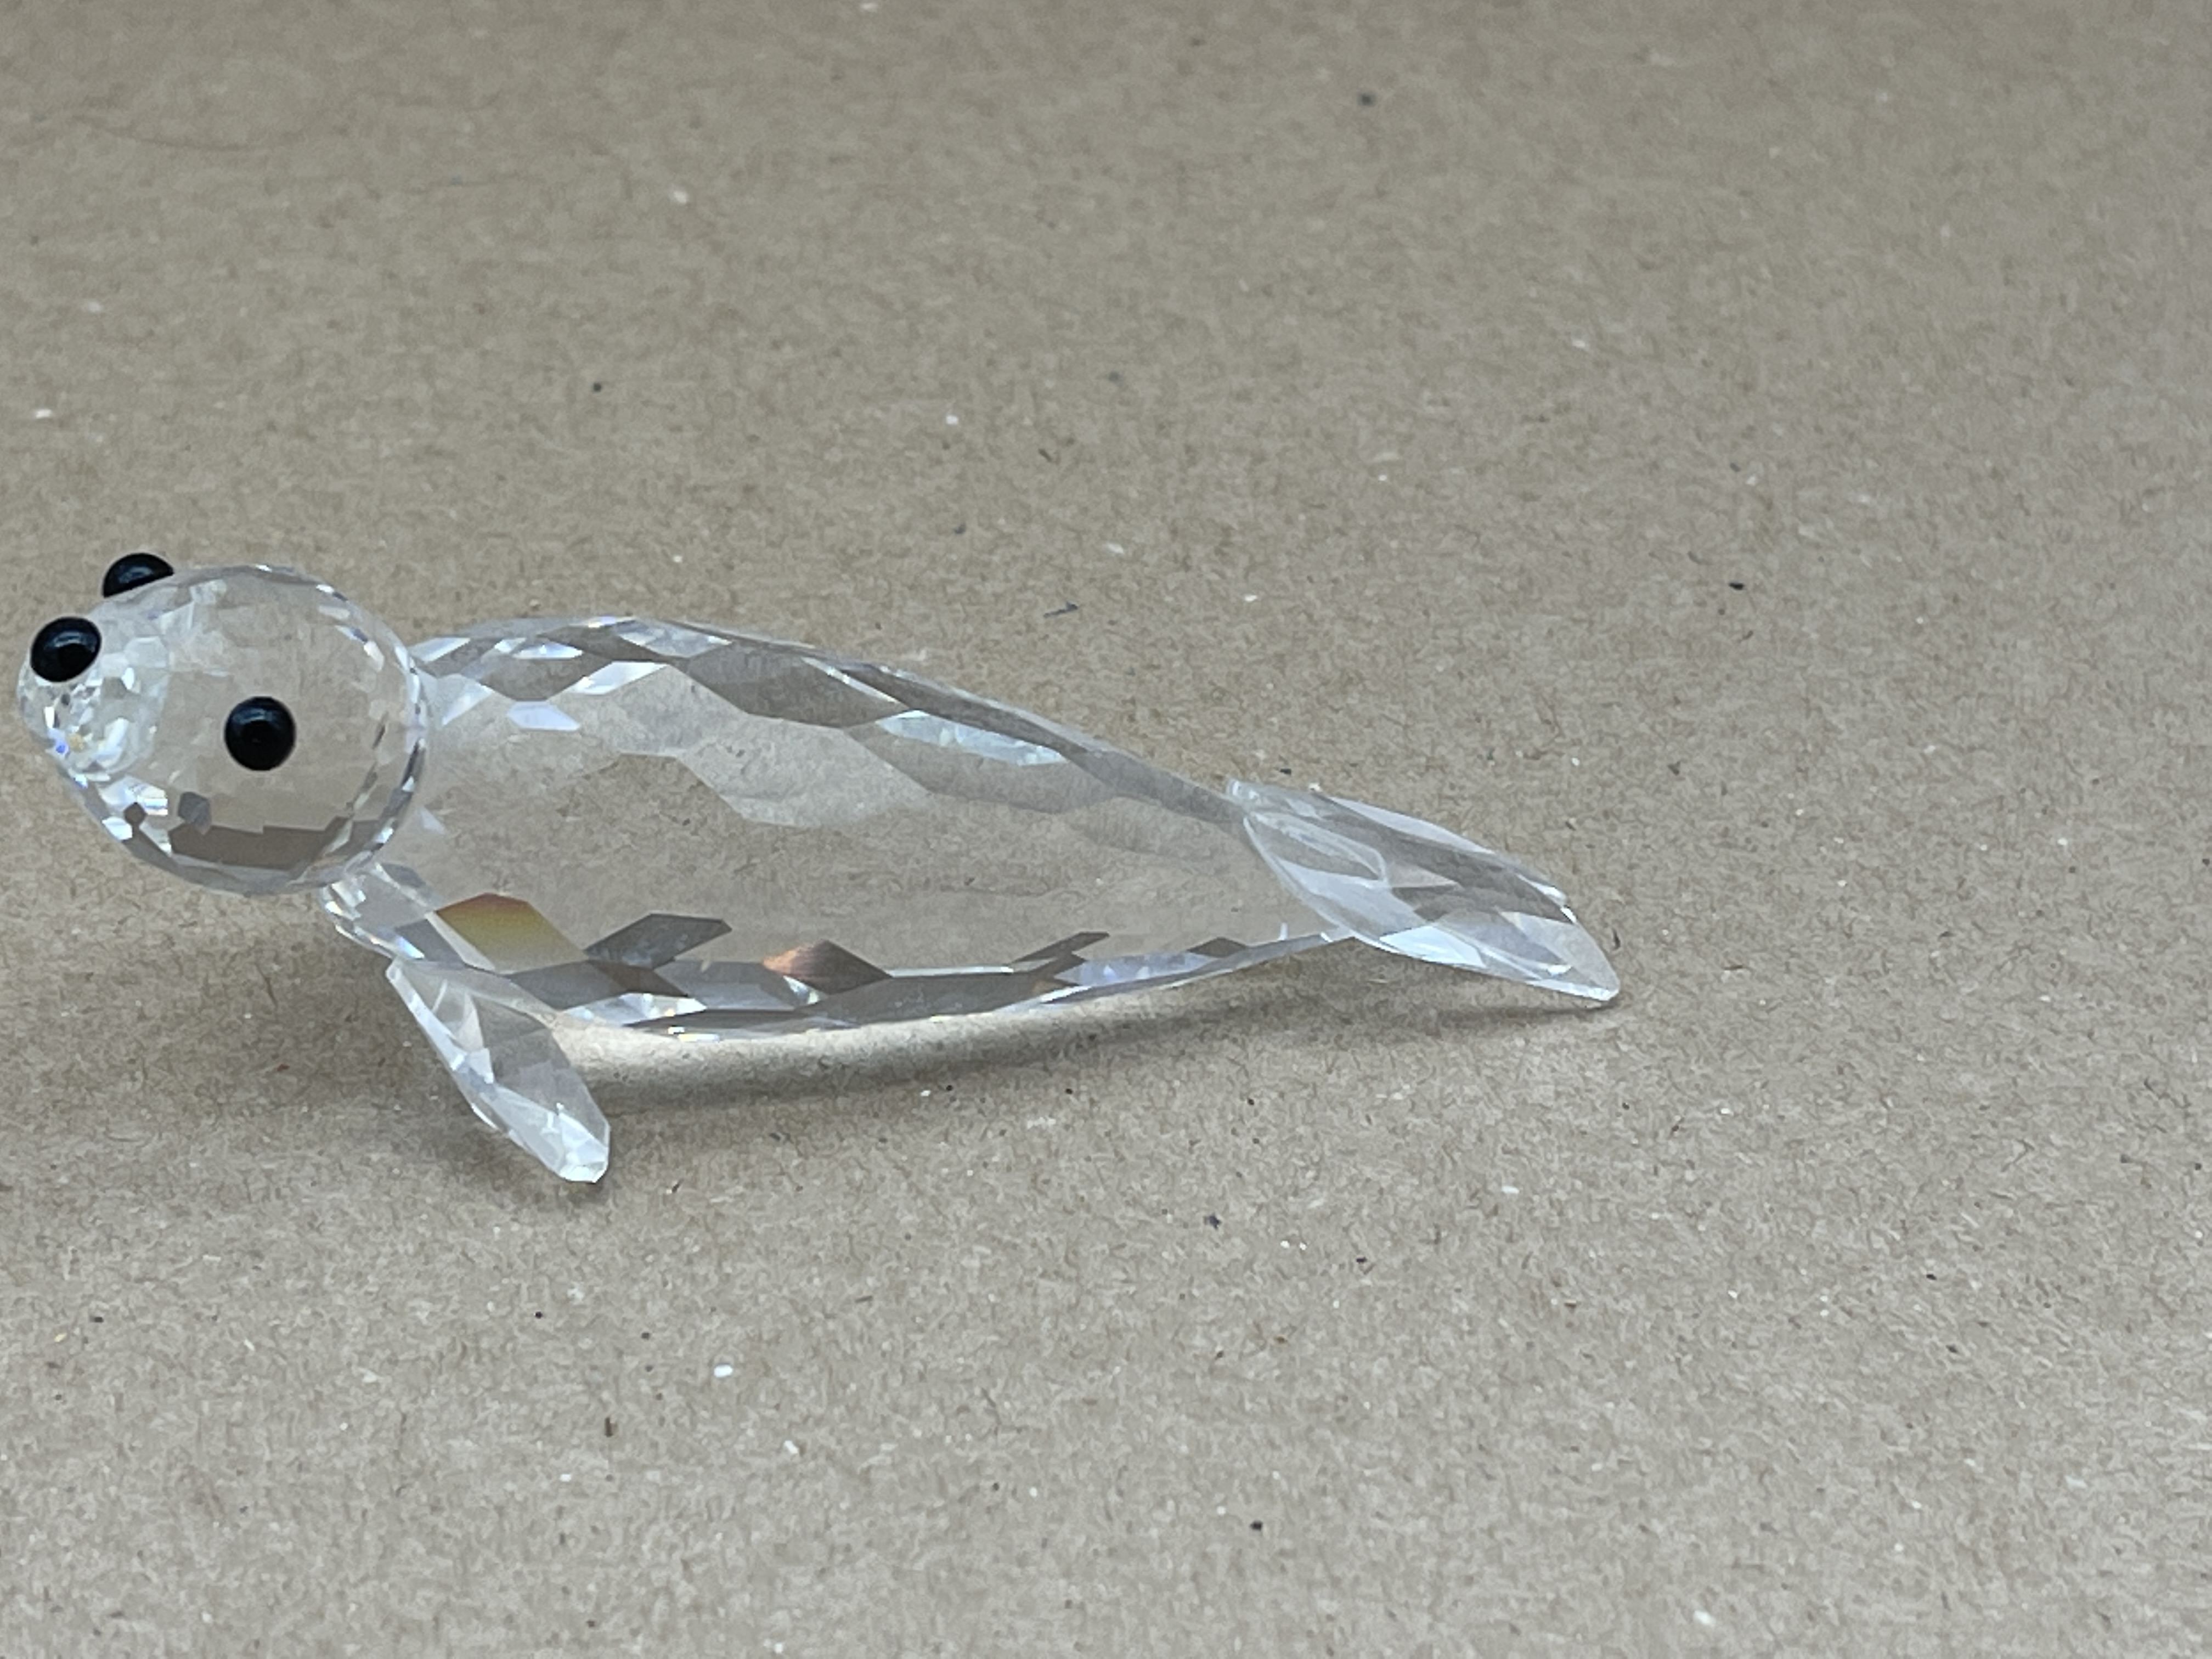  Swarovski Figur 012261 Großer Seehund / Robbe 10 cm. Top Zustand. 